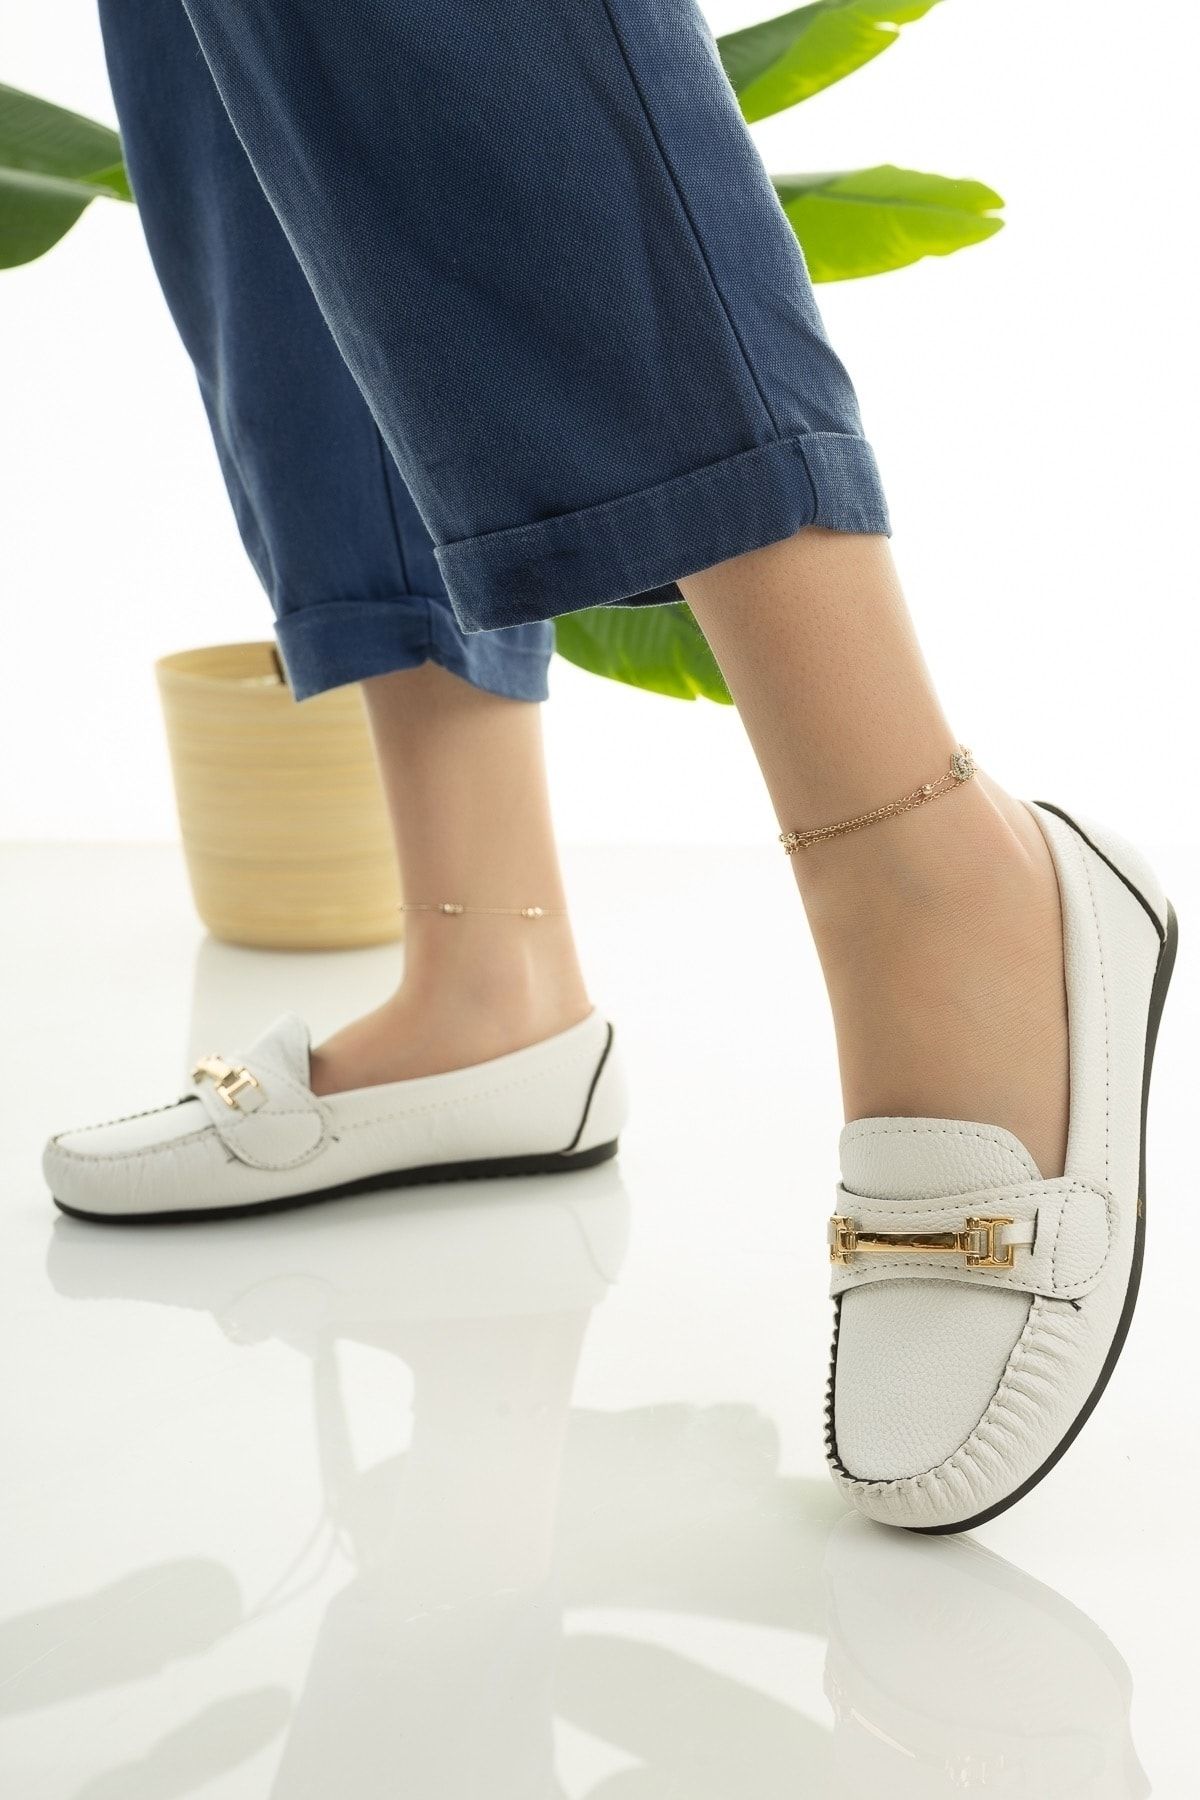 Modafırsat Kadın Babet Beyaz Zincir Tokalı Hafif Rahat Taban Şık Günlük Ayakkabı